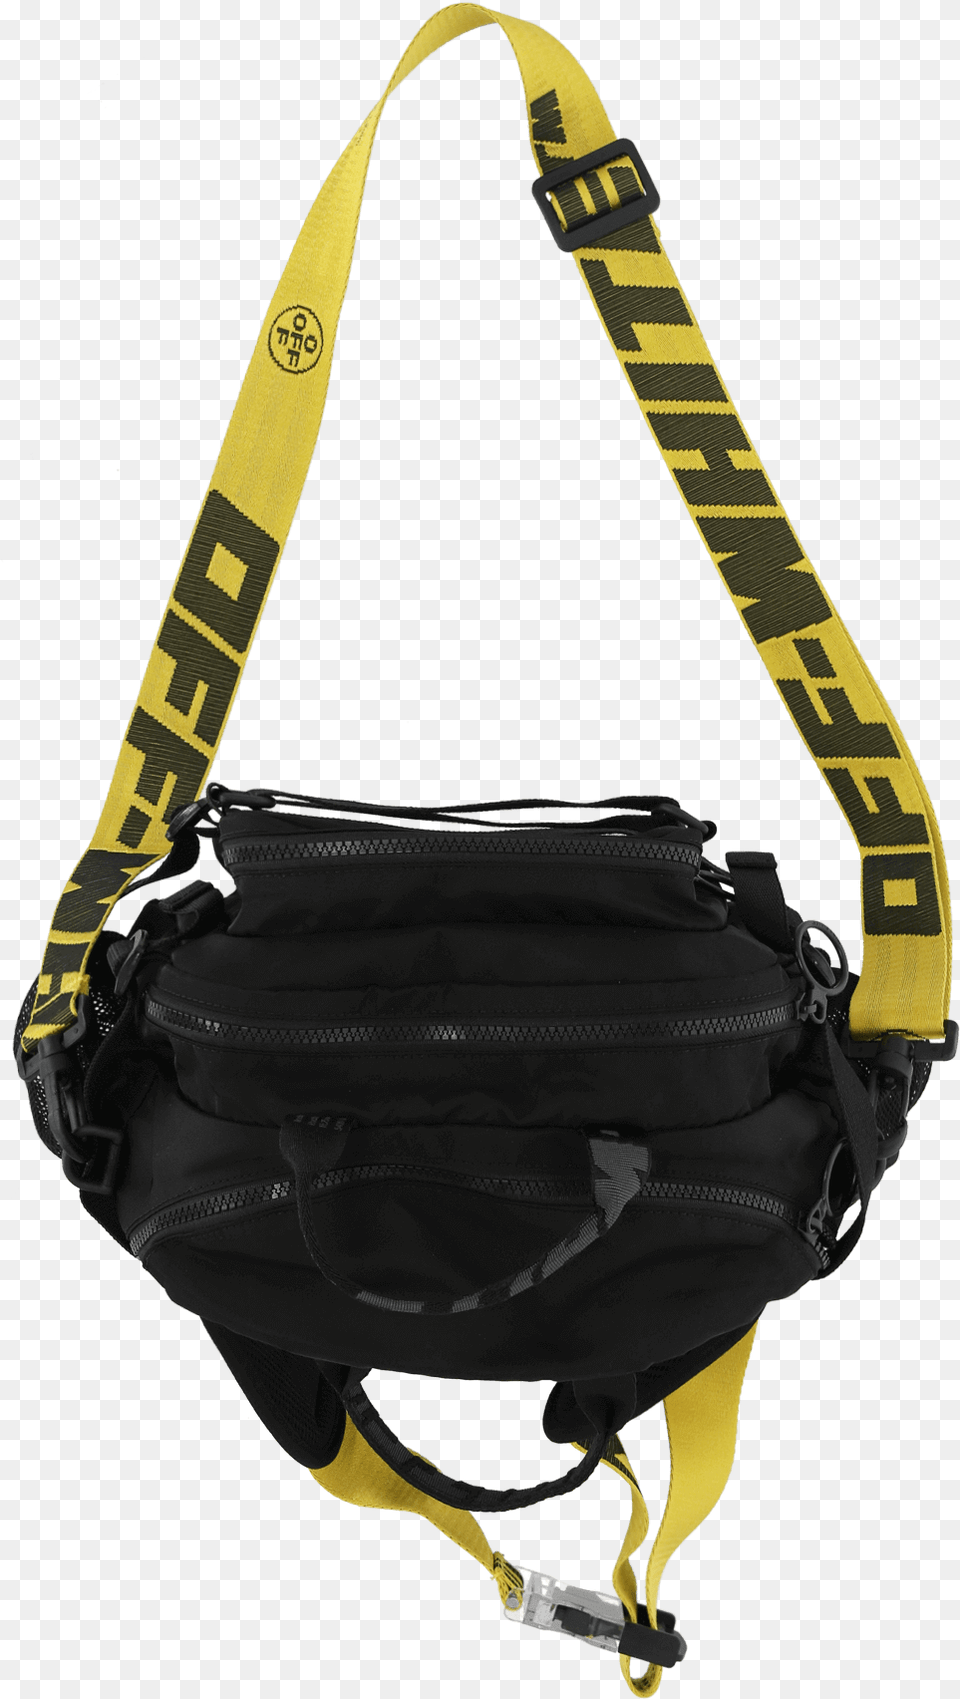 Maxi Camera Fanny Pack Shoulder Bag, Accessories, Handbag, Purse Png Image